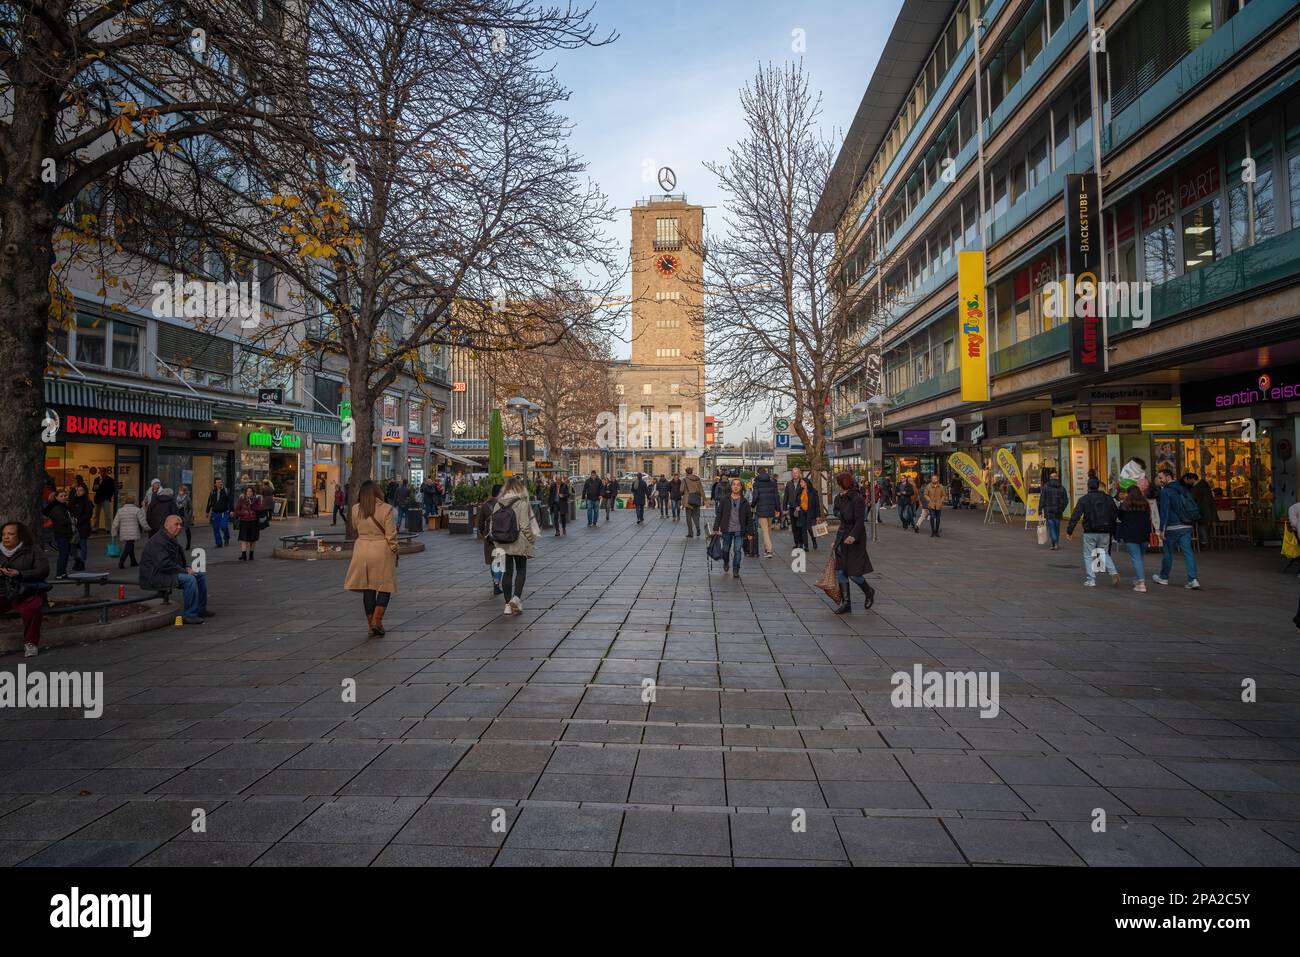 Konigstrasse main shopping street and Stuttgart Central Station (Hauptbahnhof) - Stuttgart, Germany Stock Photo